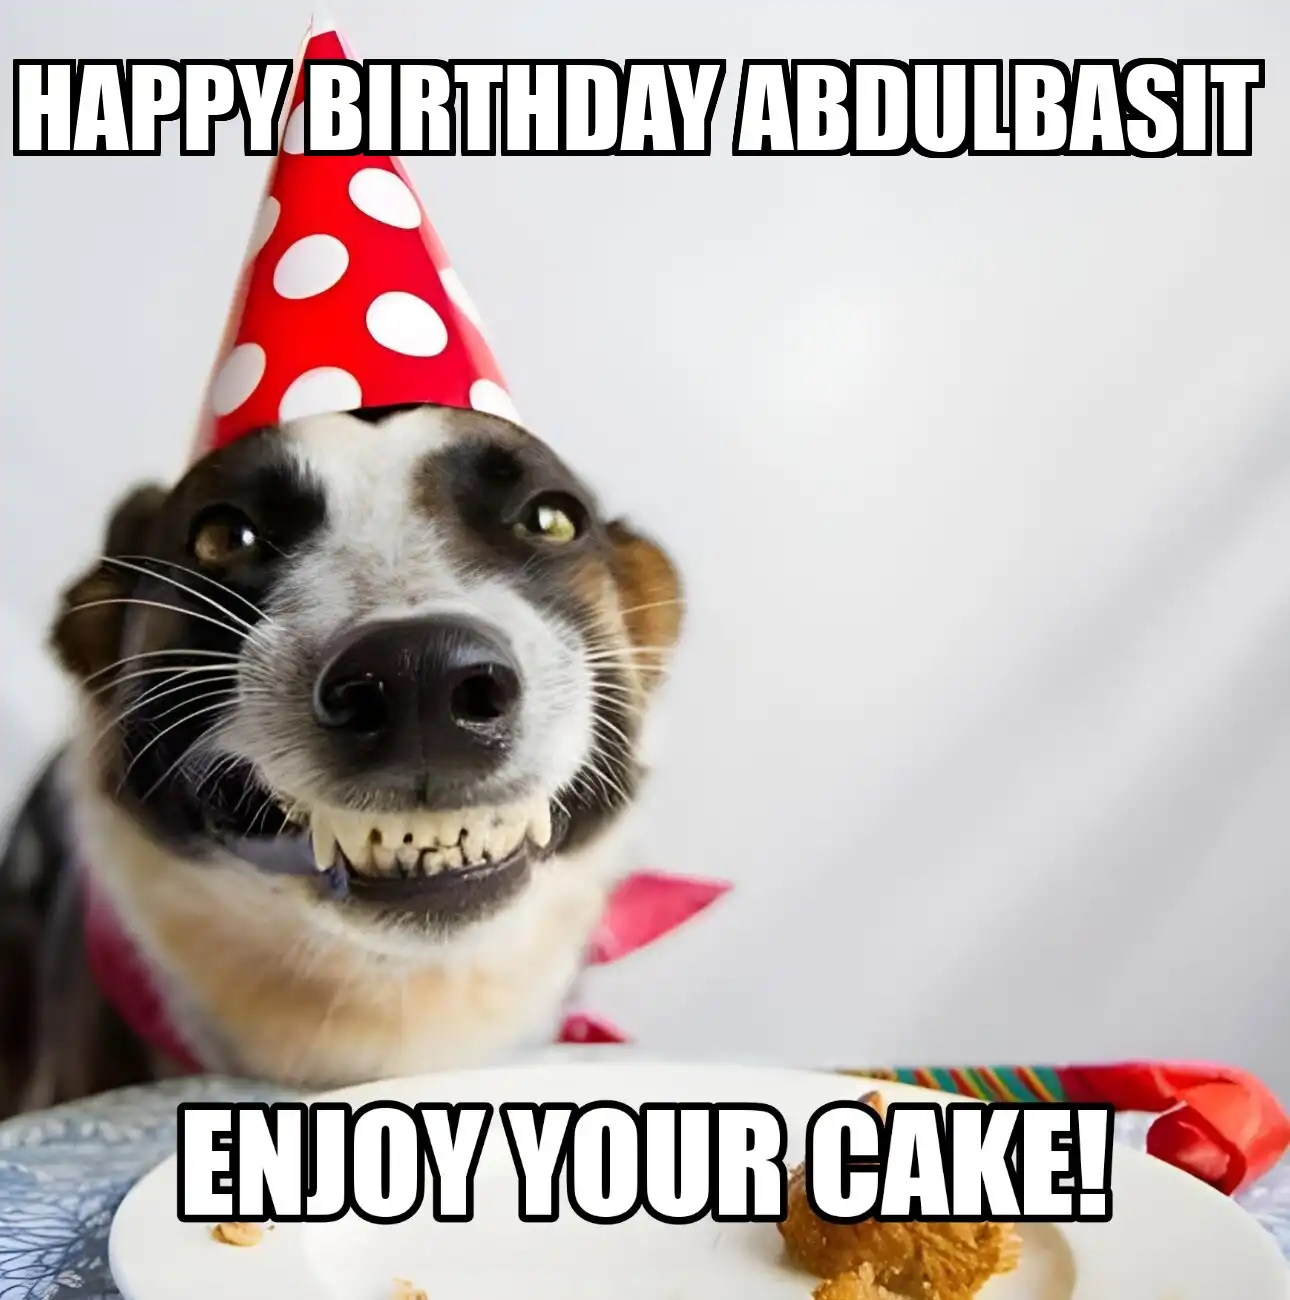 Happy Birthday Abdulbasit Enjoy Your Cake Dog Meme